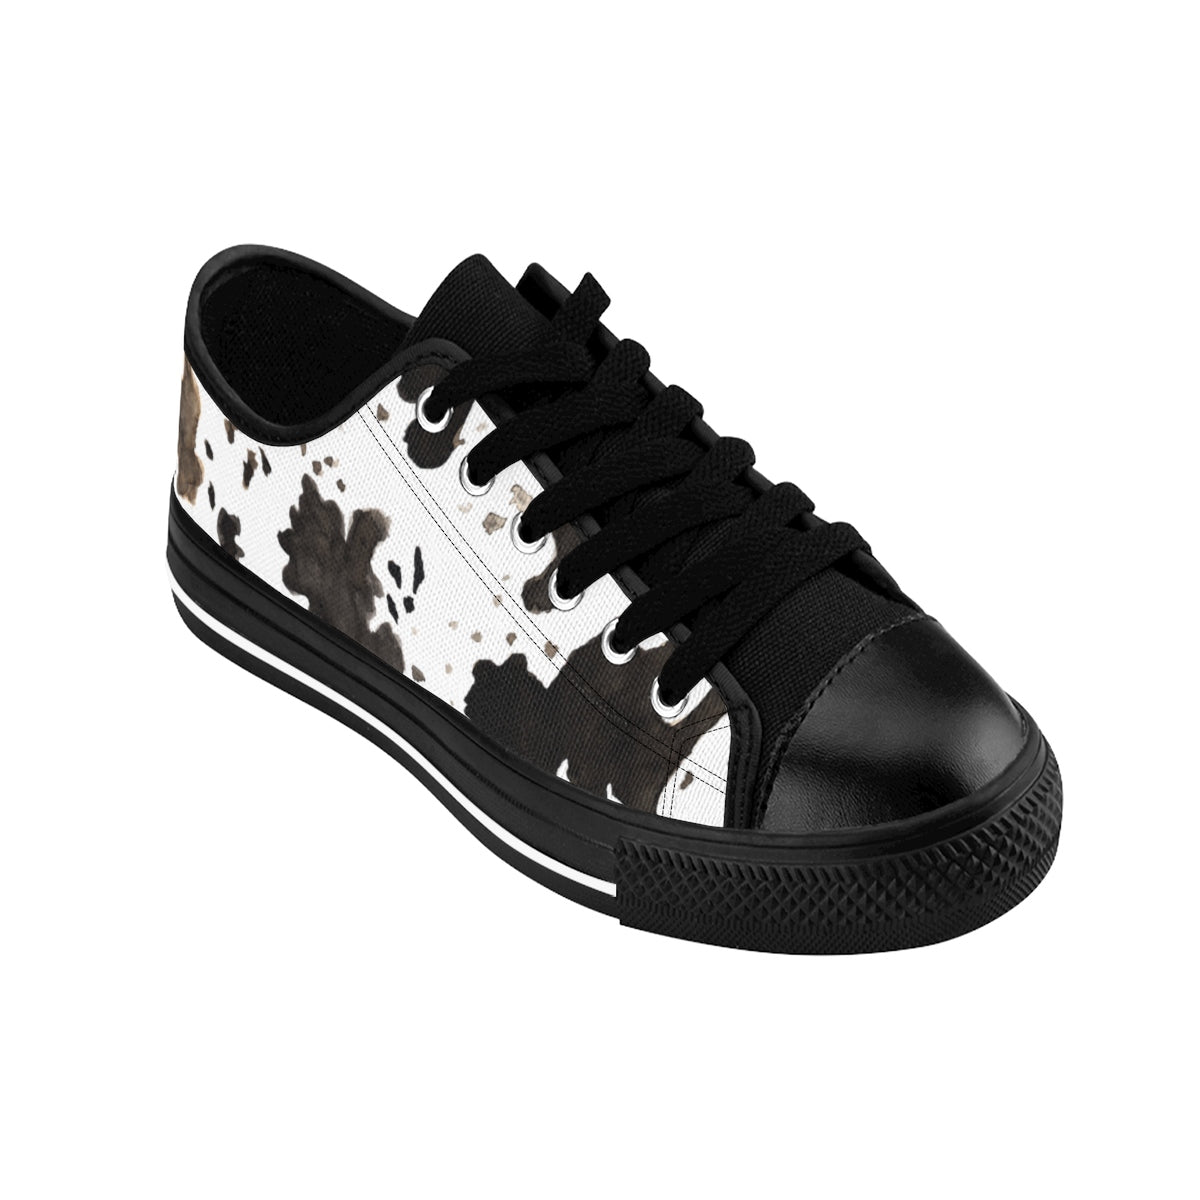 Moo Cow Print Animal Artistic Men's Low Top Nylon Canvas Sneakers Tennis Shoes-Men's Low Top Sneakers-Black-US 9-Heidi Kimura Art LLC